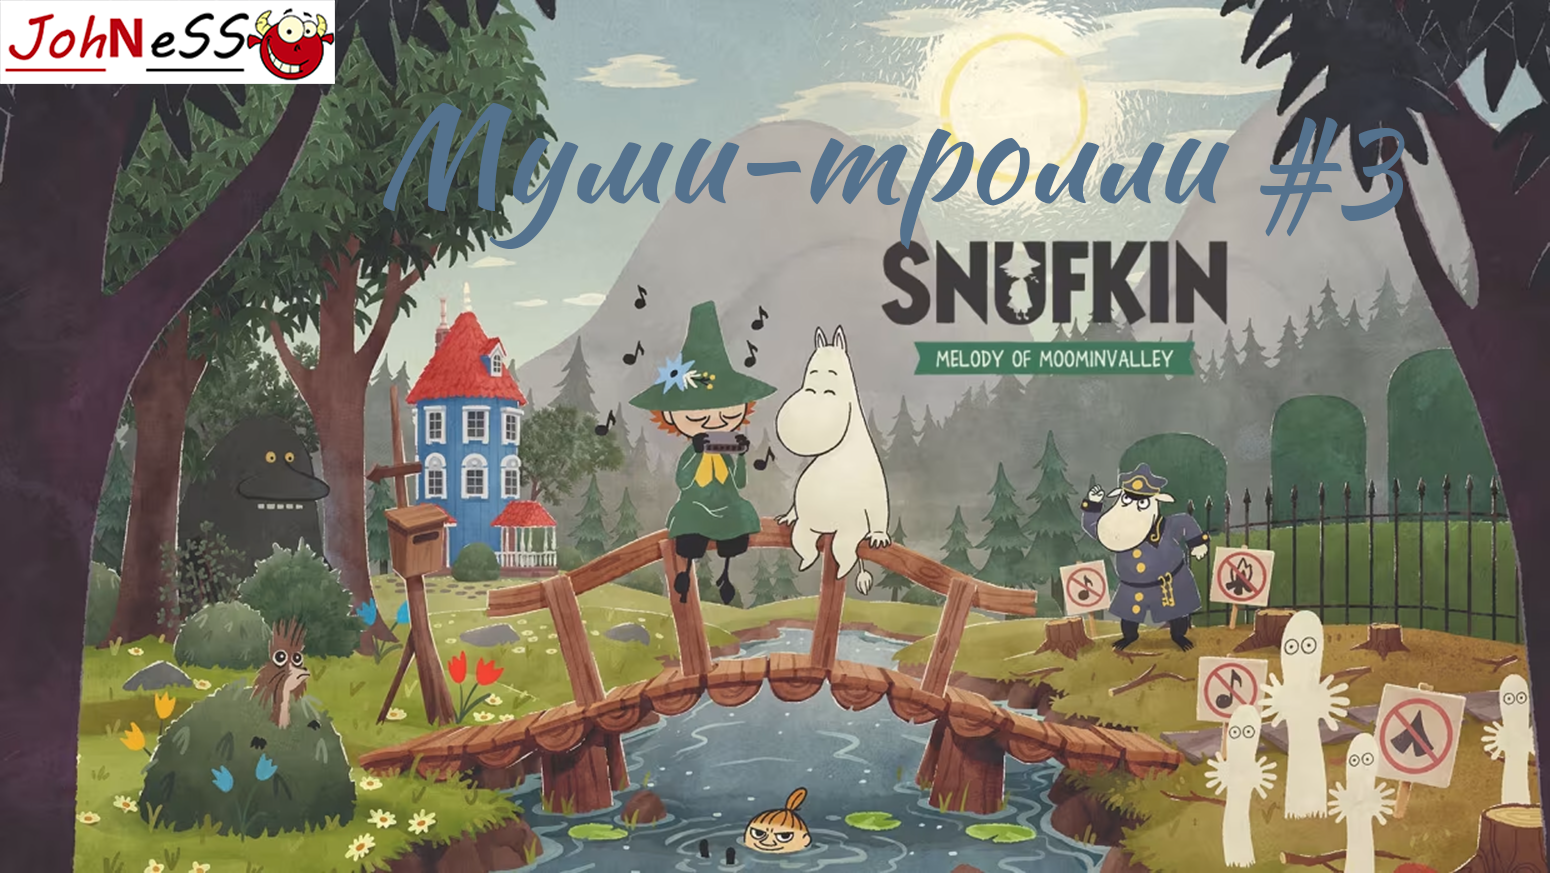 СТРОИТЕЛЬСТВО ПЛОТА ► Snufkin: Melody of Moominvalley / Прохождение #3